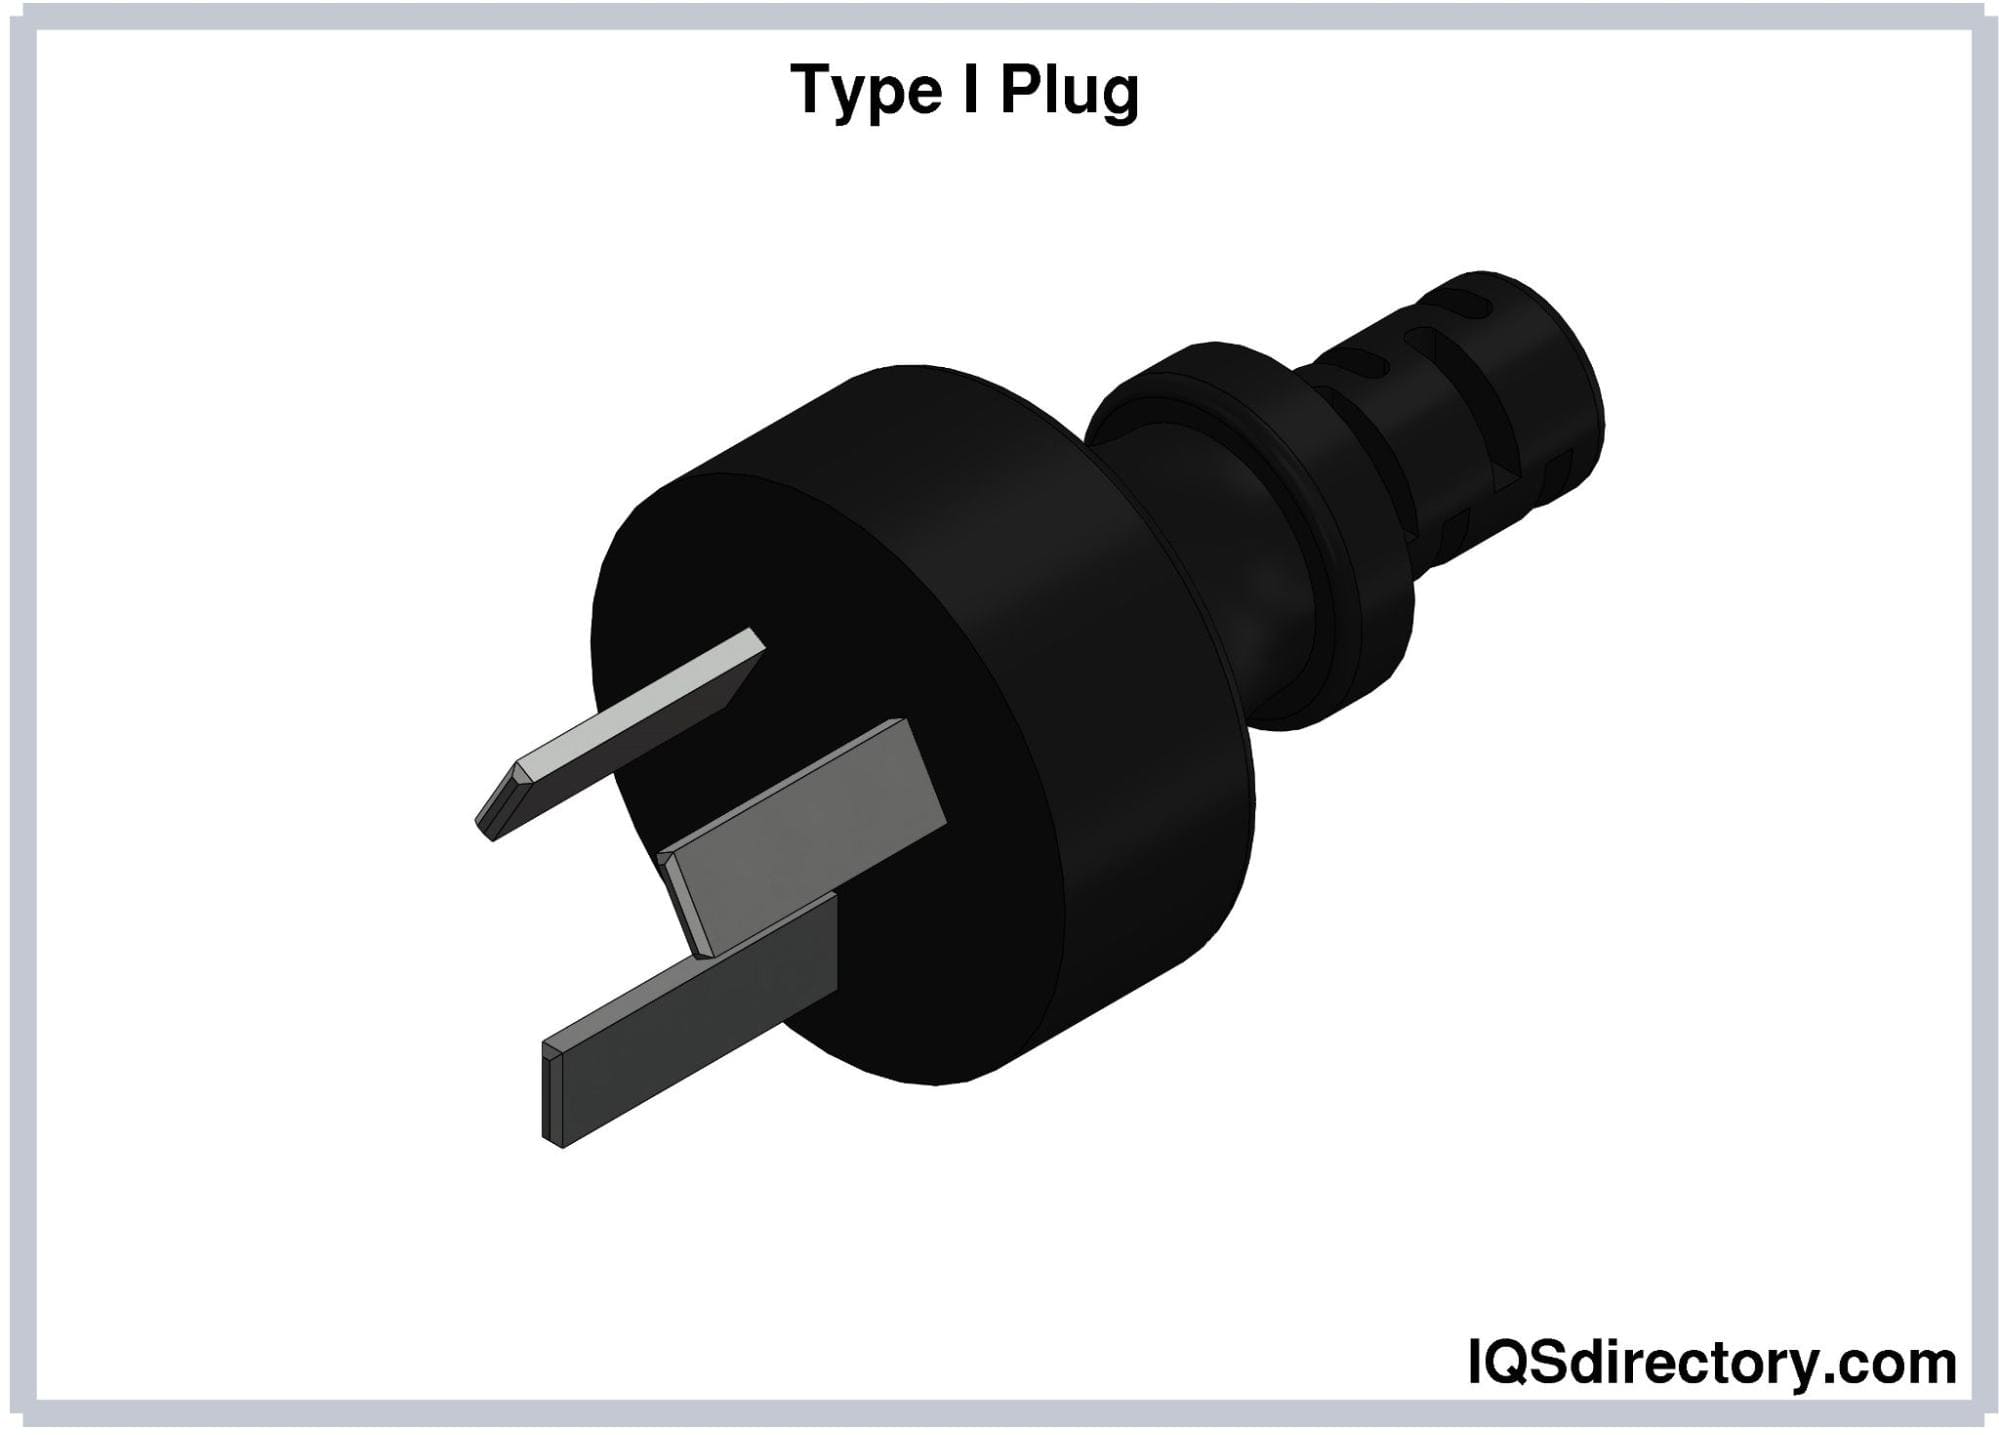 Type I Plug